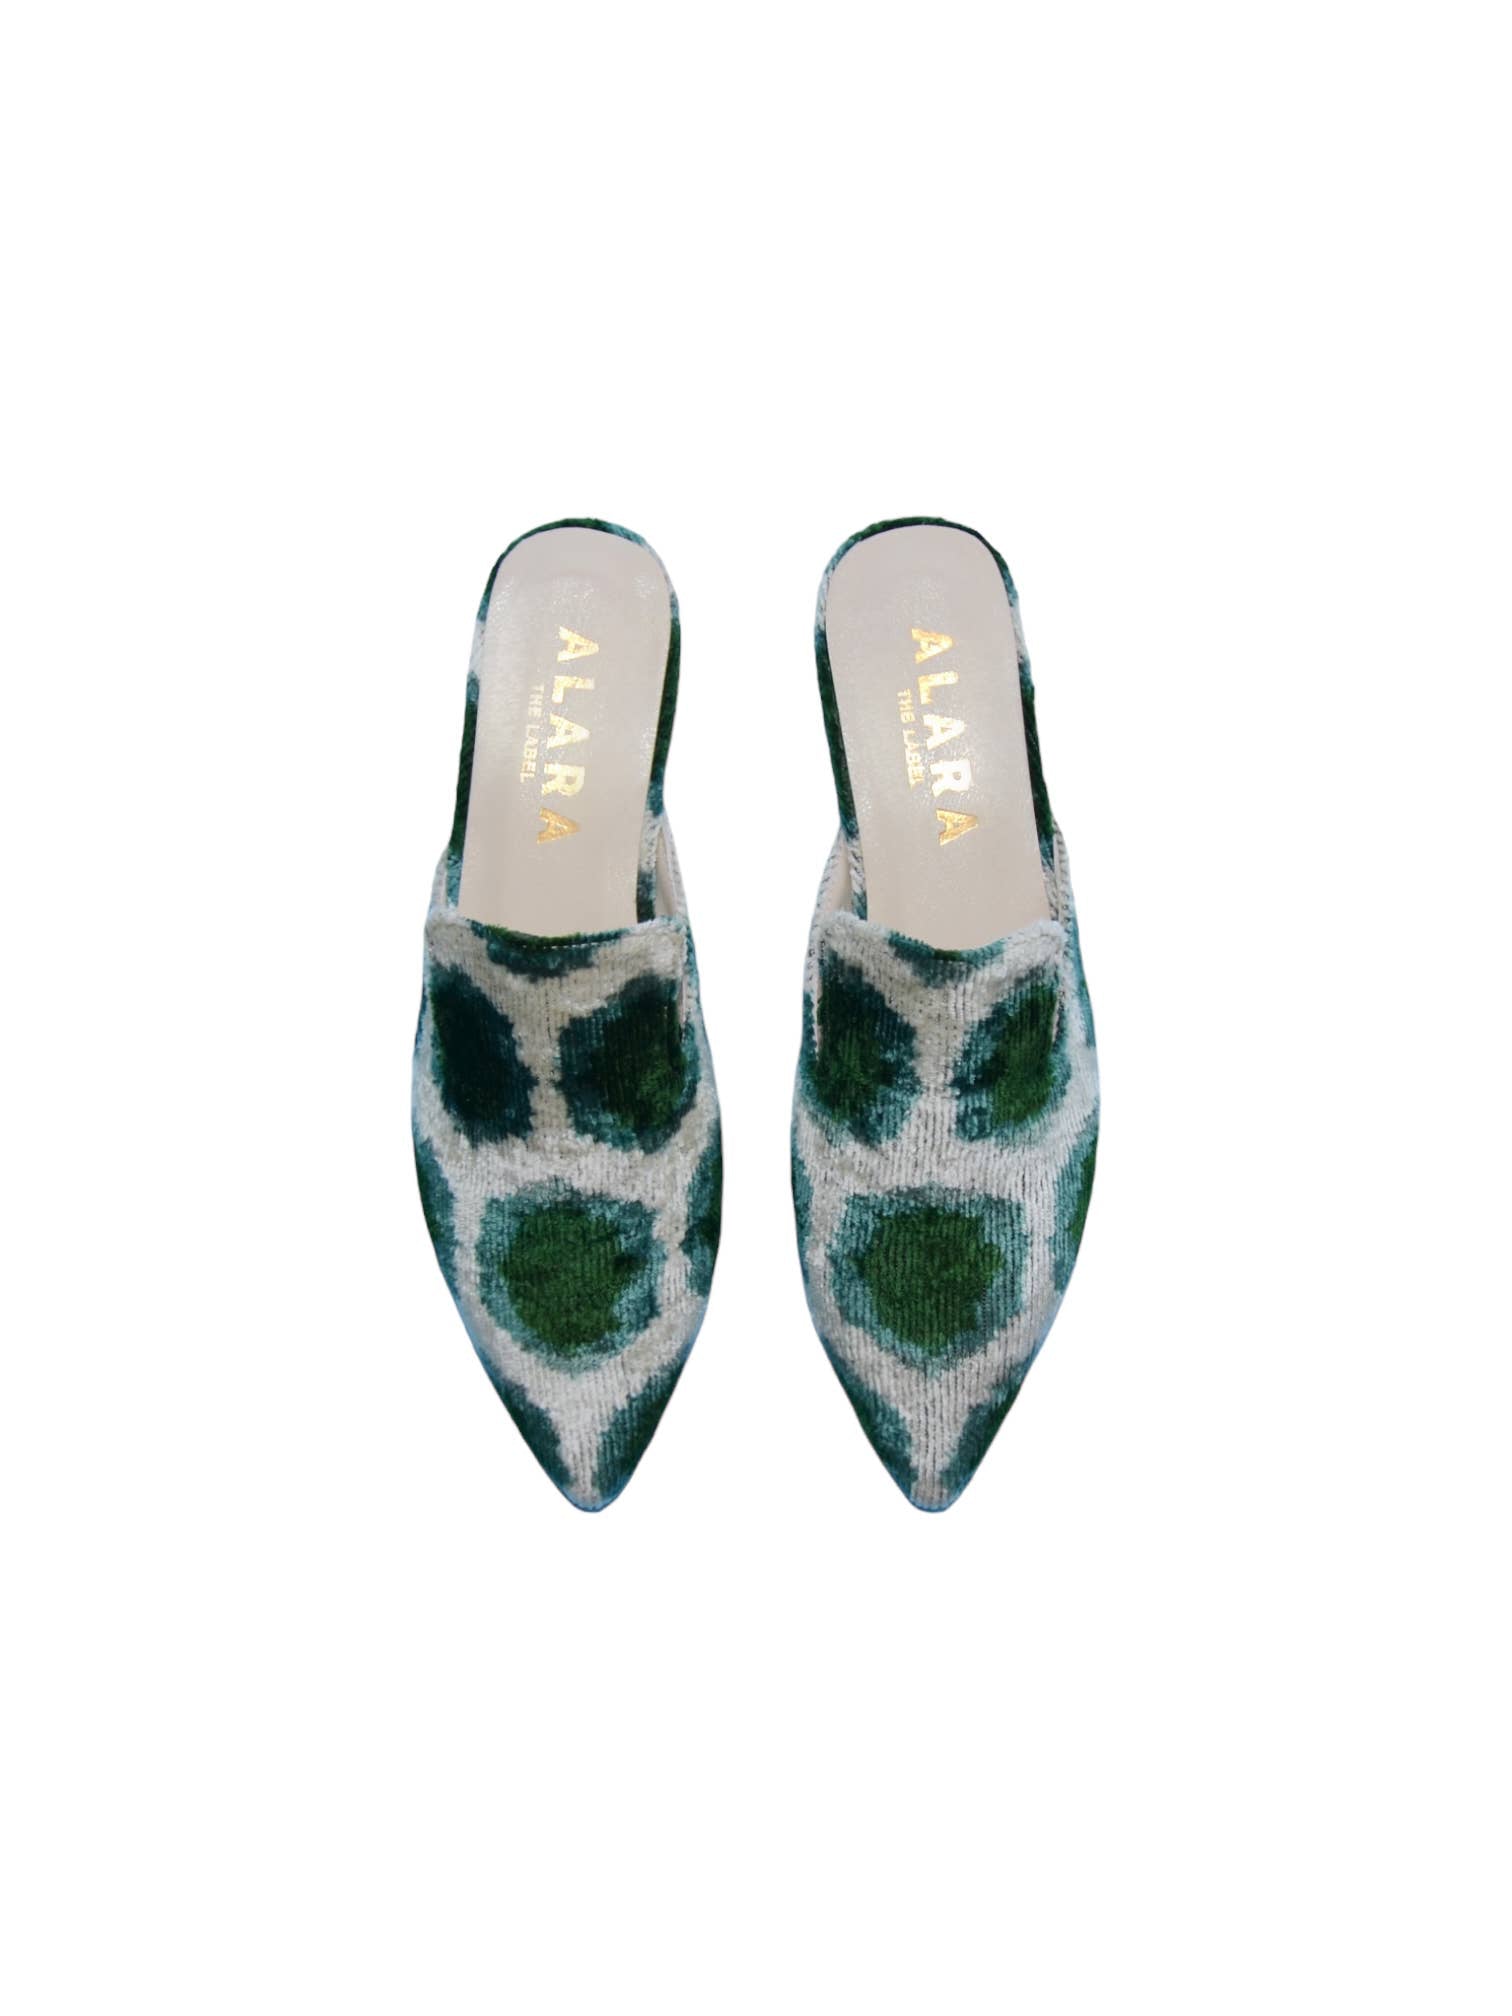 Slides | Emerald Cell | Ayca Design